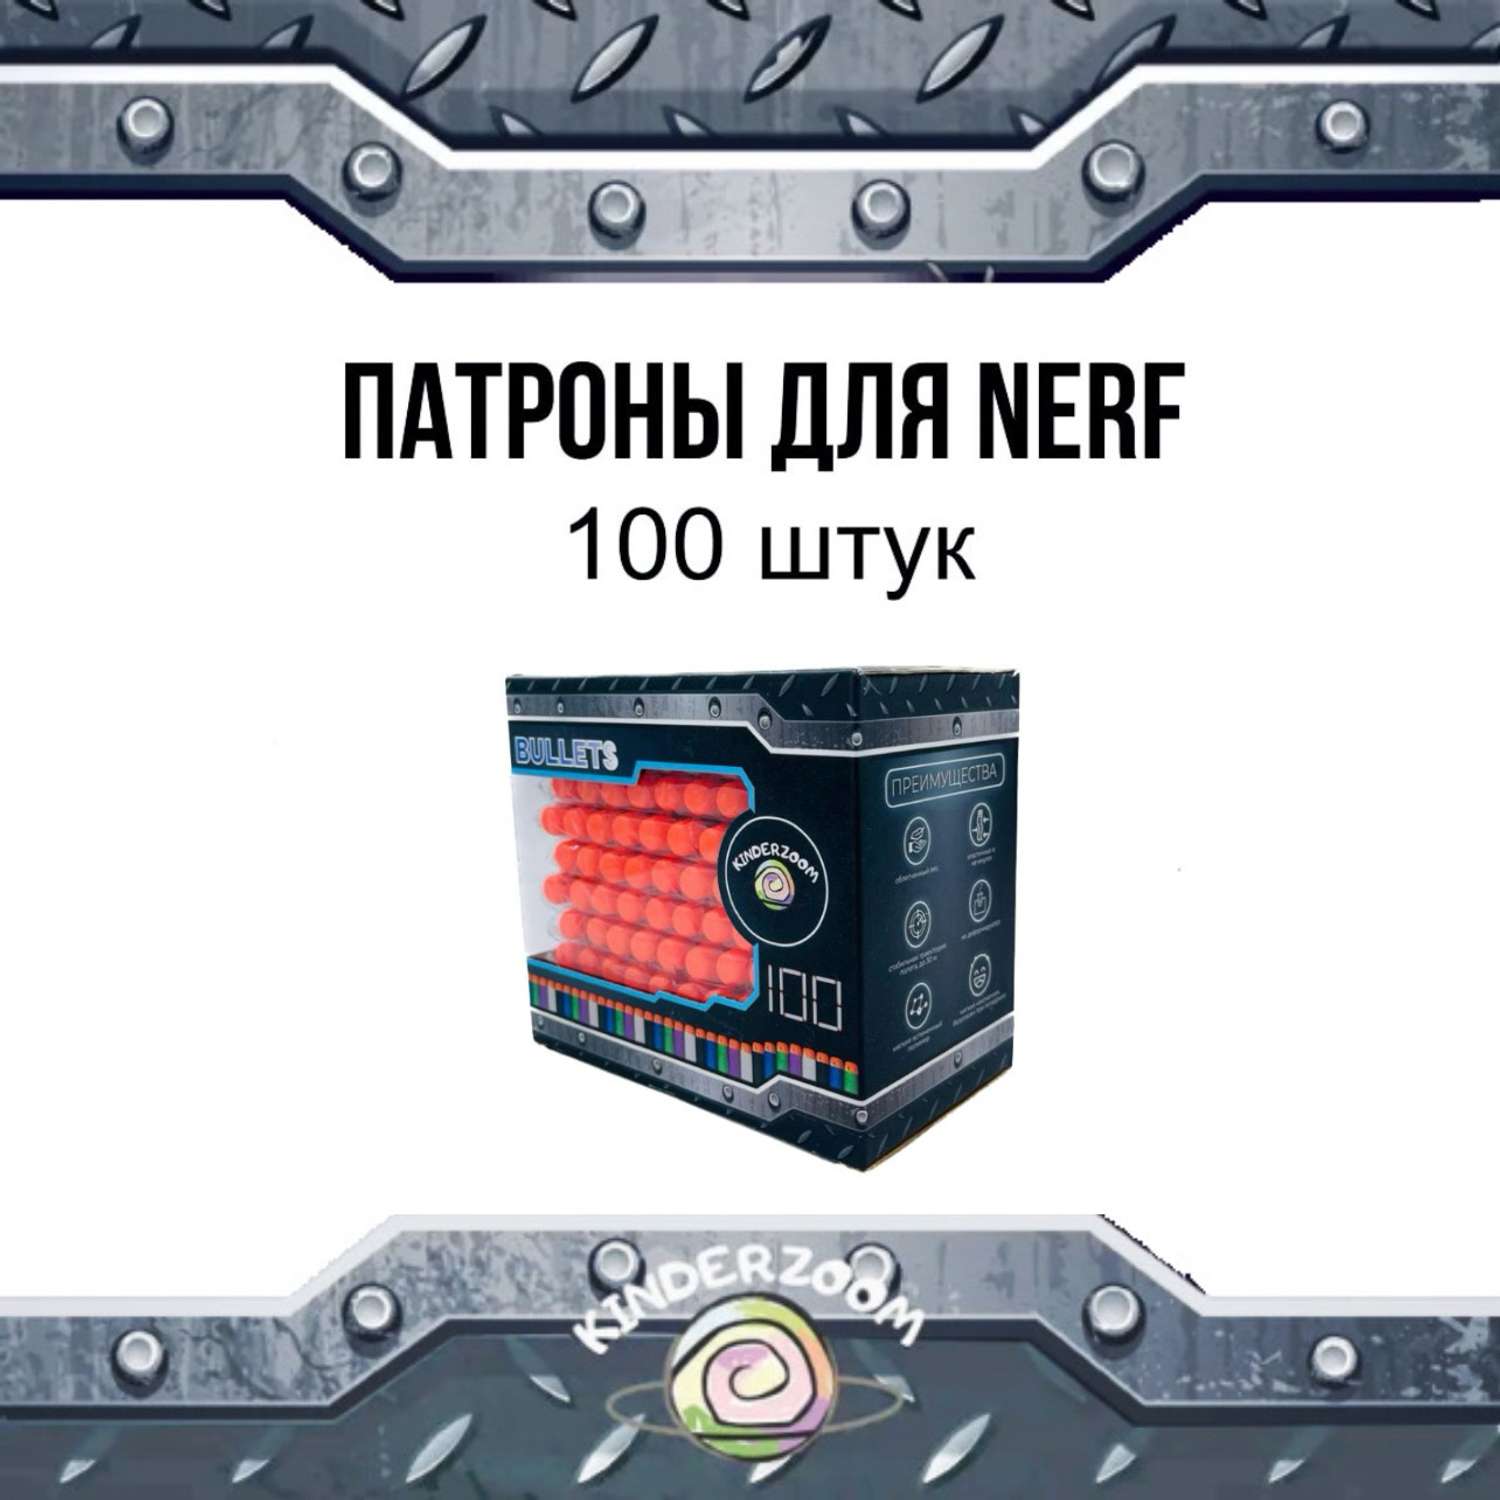 Патроны для бластеров Nerf Kinderzoom blackpris 100 шт. - фото 1